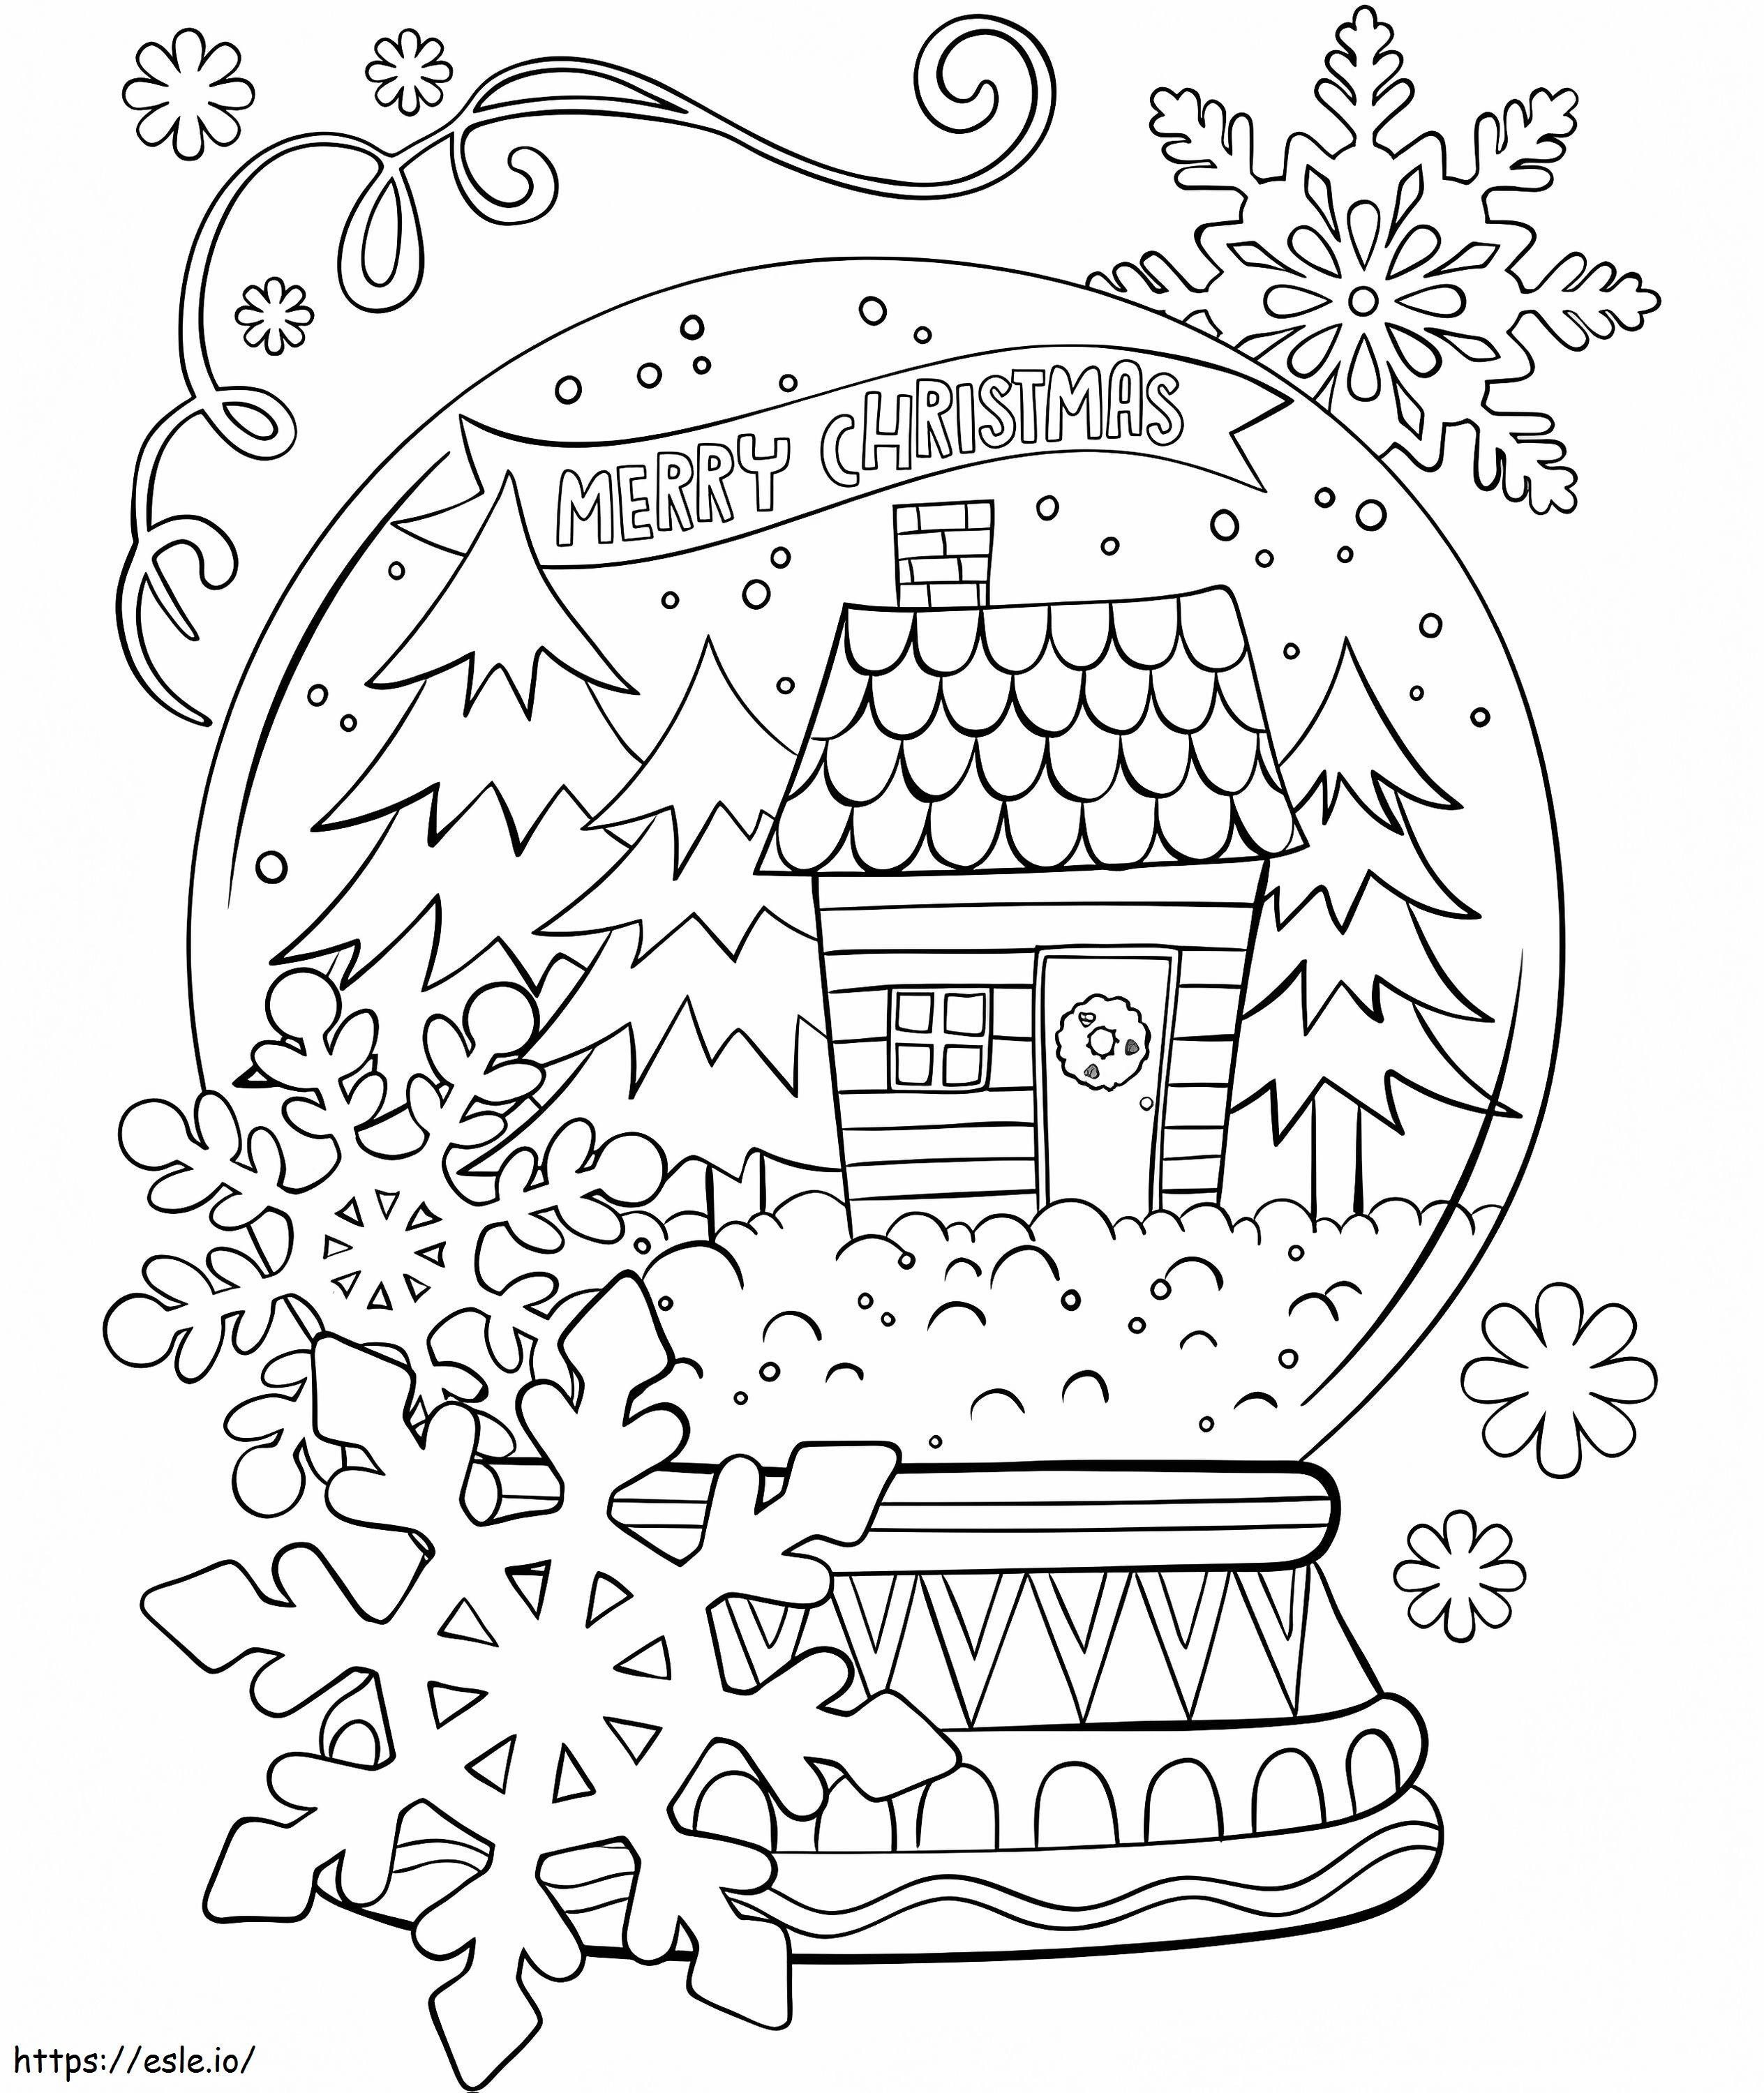 Coloriage Joyeux Noël Boule à Neige à imprimer dessin